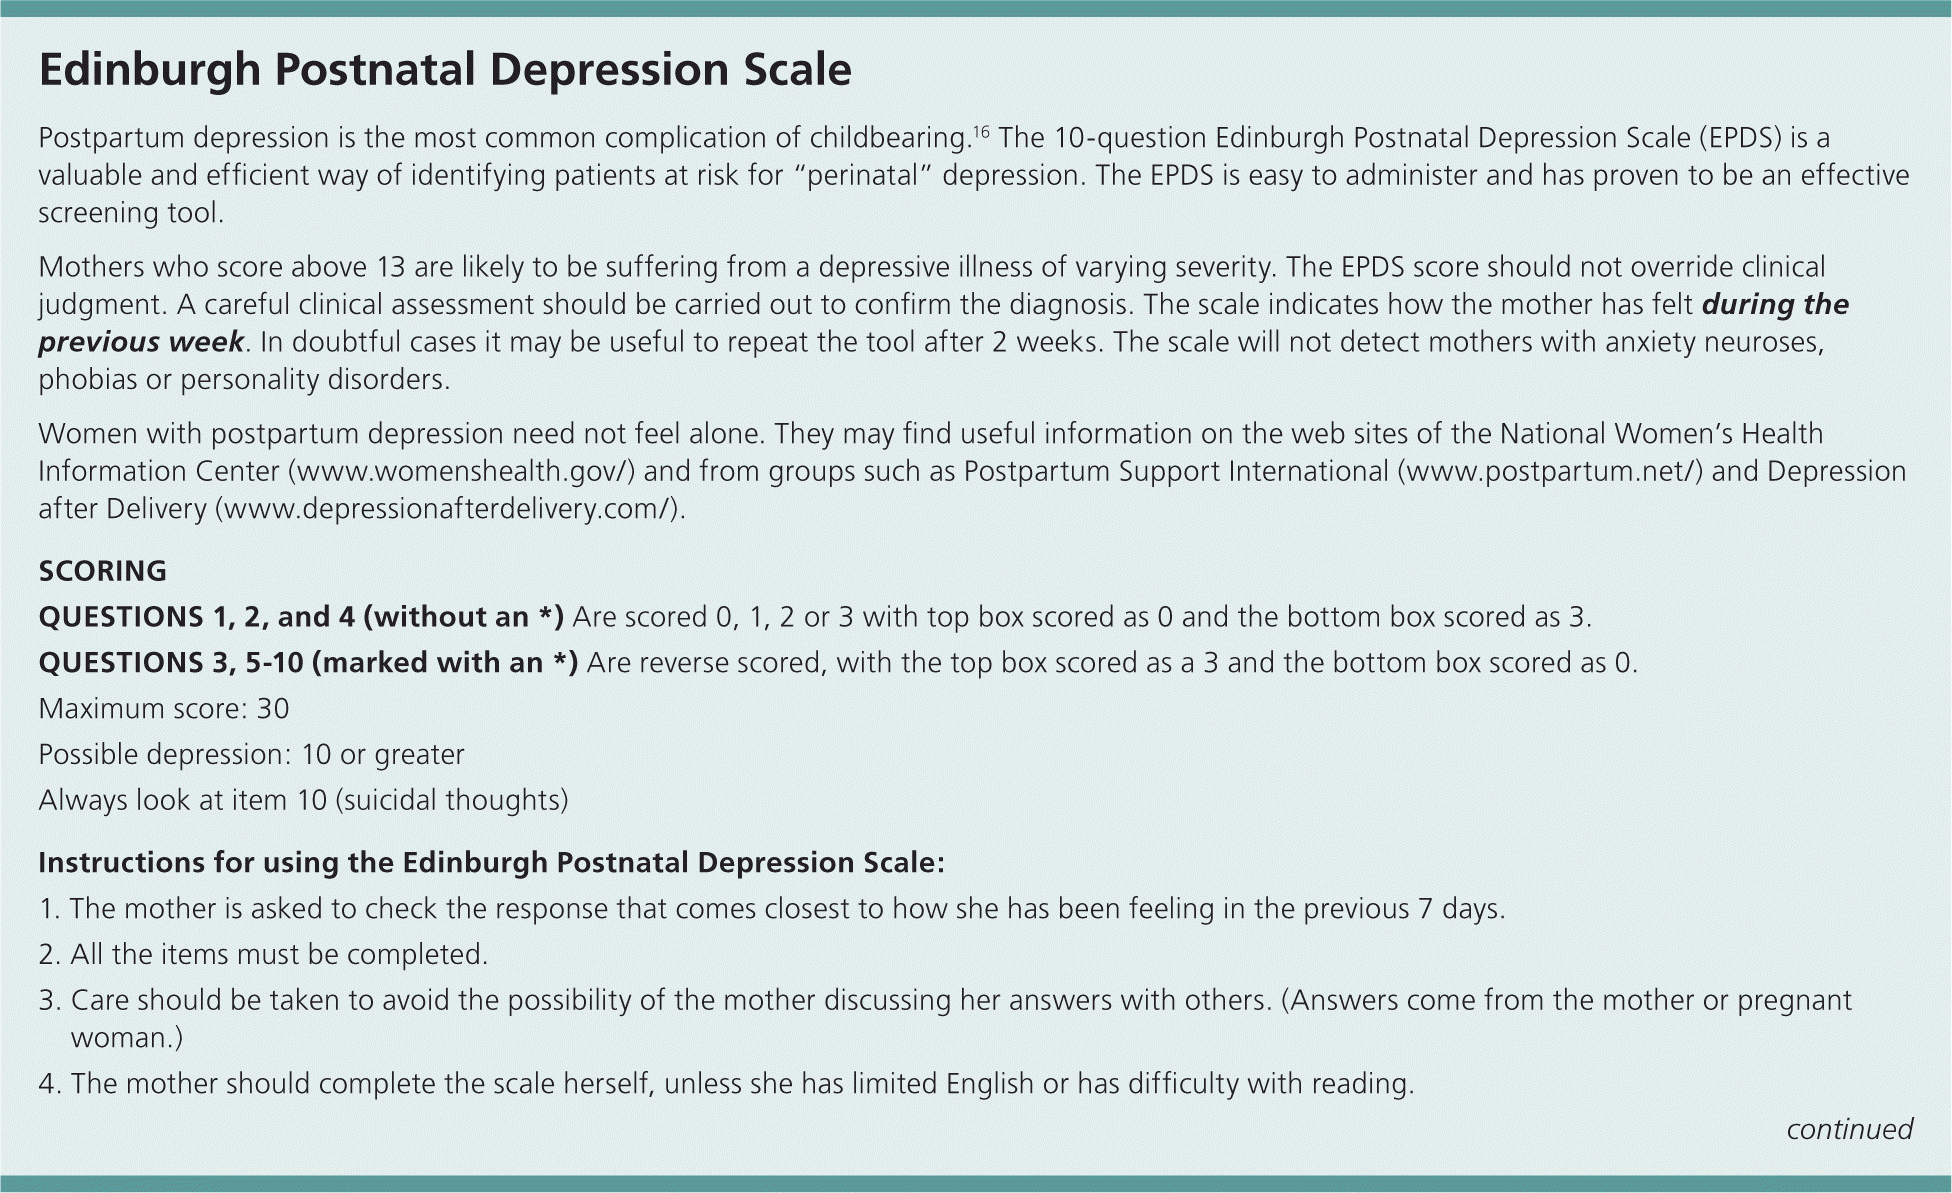 postpartum depression treatment essay